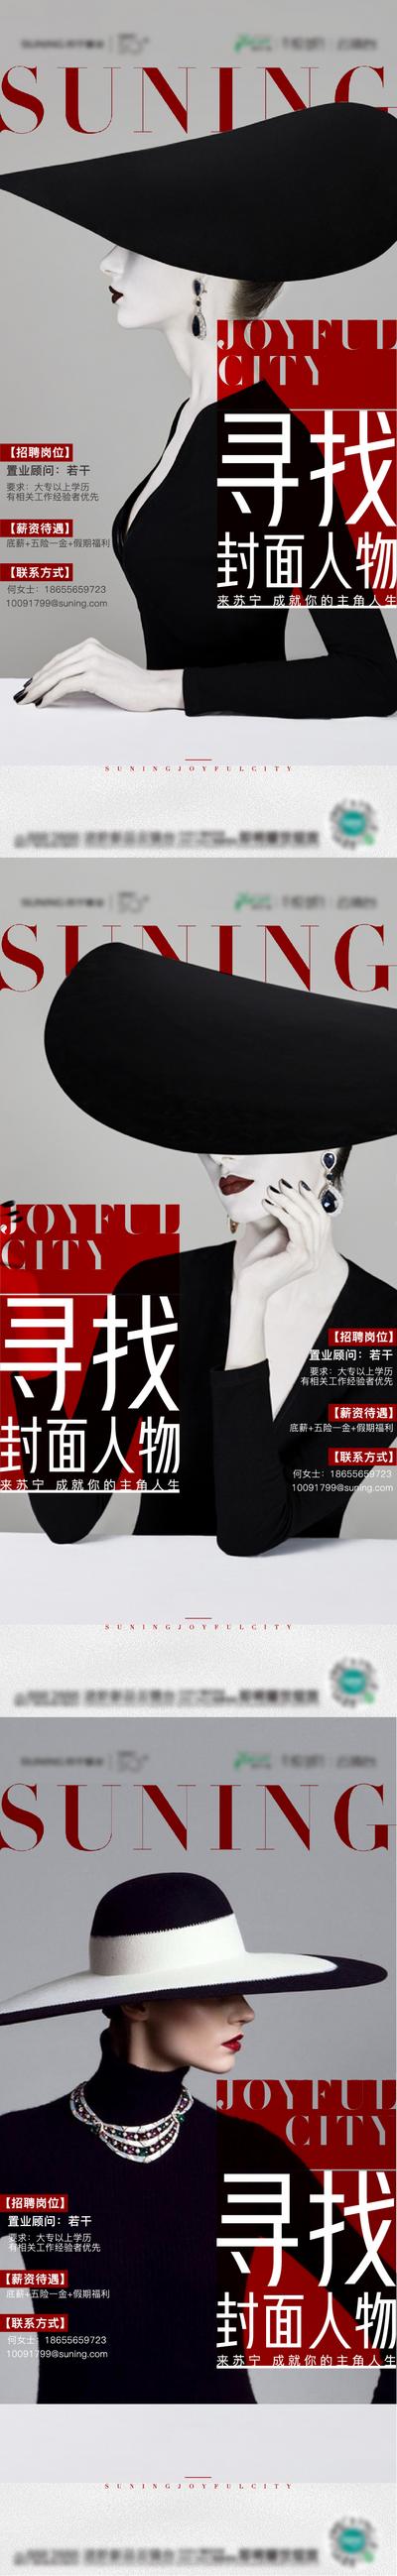 南门网 海报 房地产 招聘 诚聘 品质 潮流 时尚 人物 系列